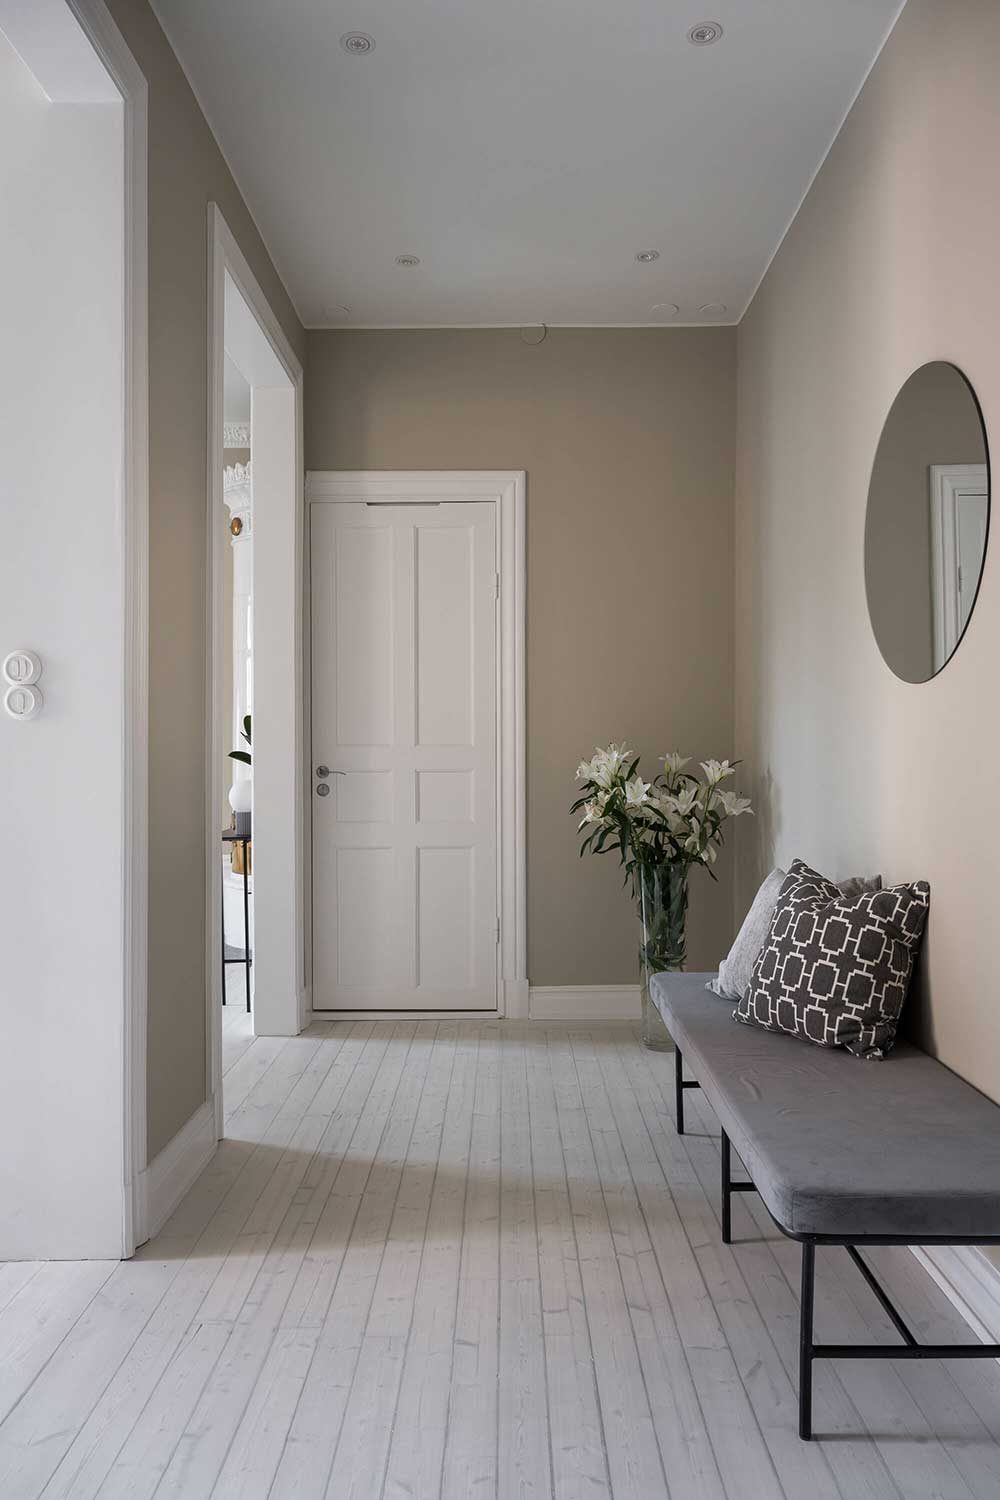 Спокойствие и умиротворение: нежный монохромный интерьер скандинавской квартиры (65 кв. м)